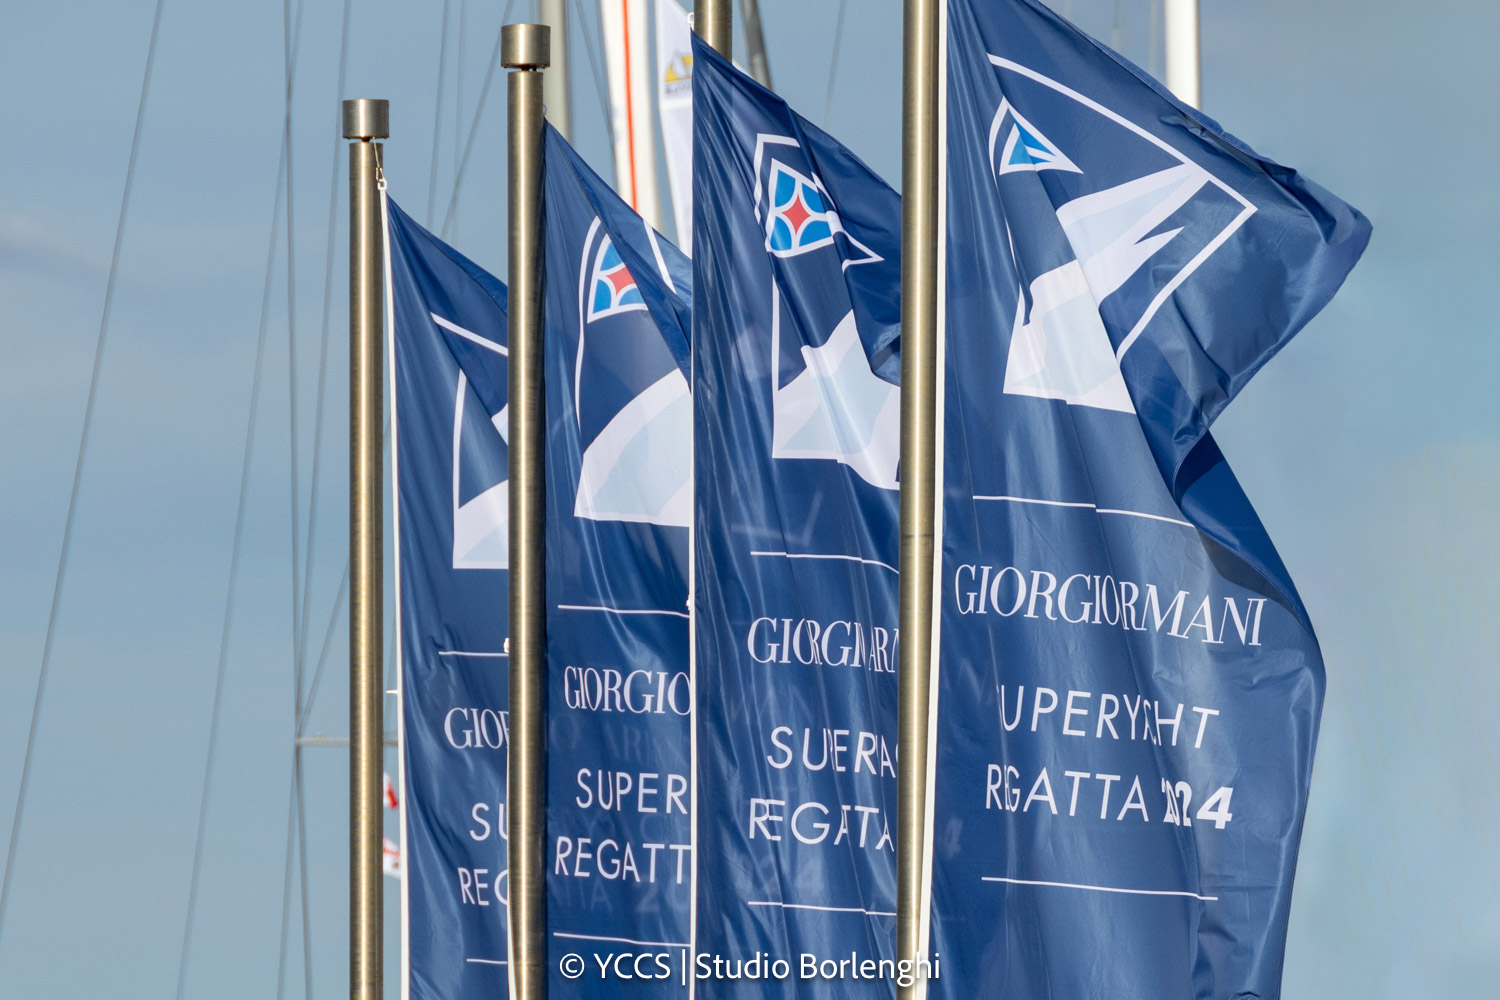 Una nuova edizione della Giorgio Armani Superyacht Regatta è alle porte - NEWS - Yacht Club Costa Smeralda